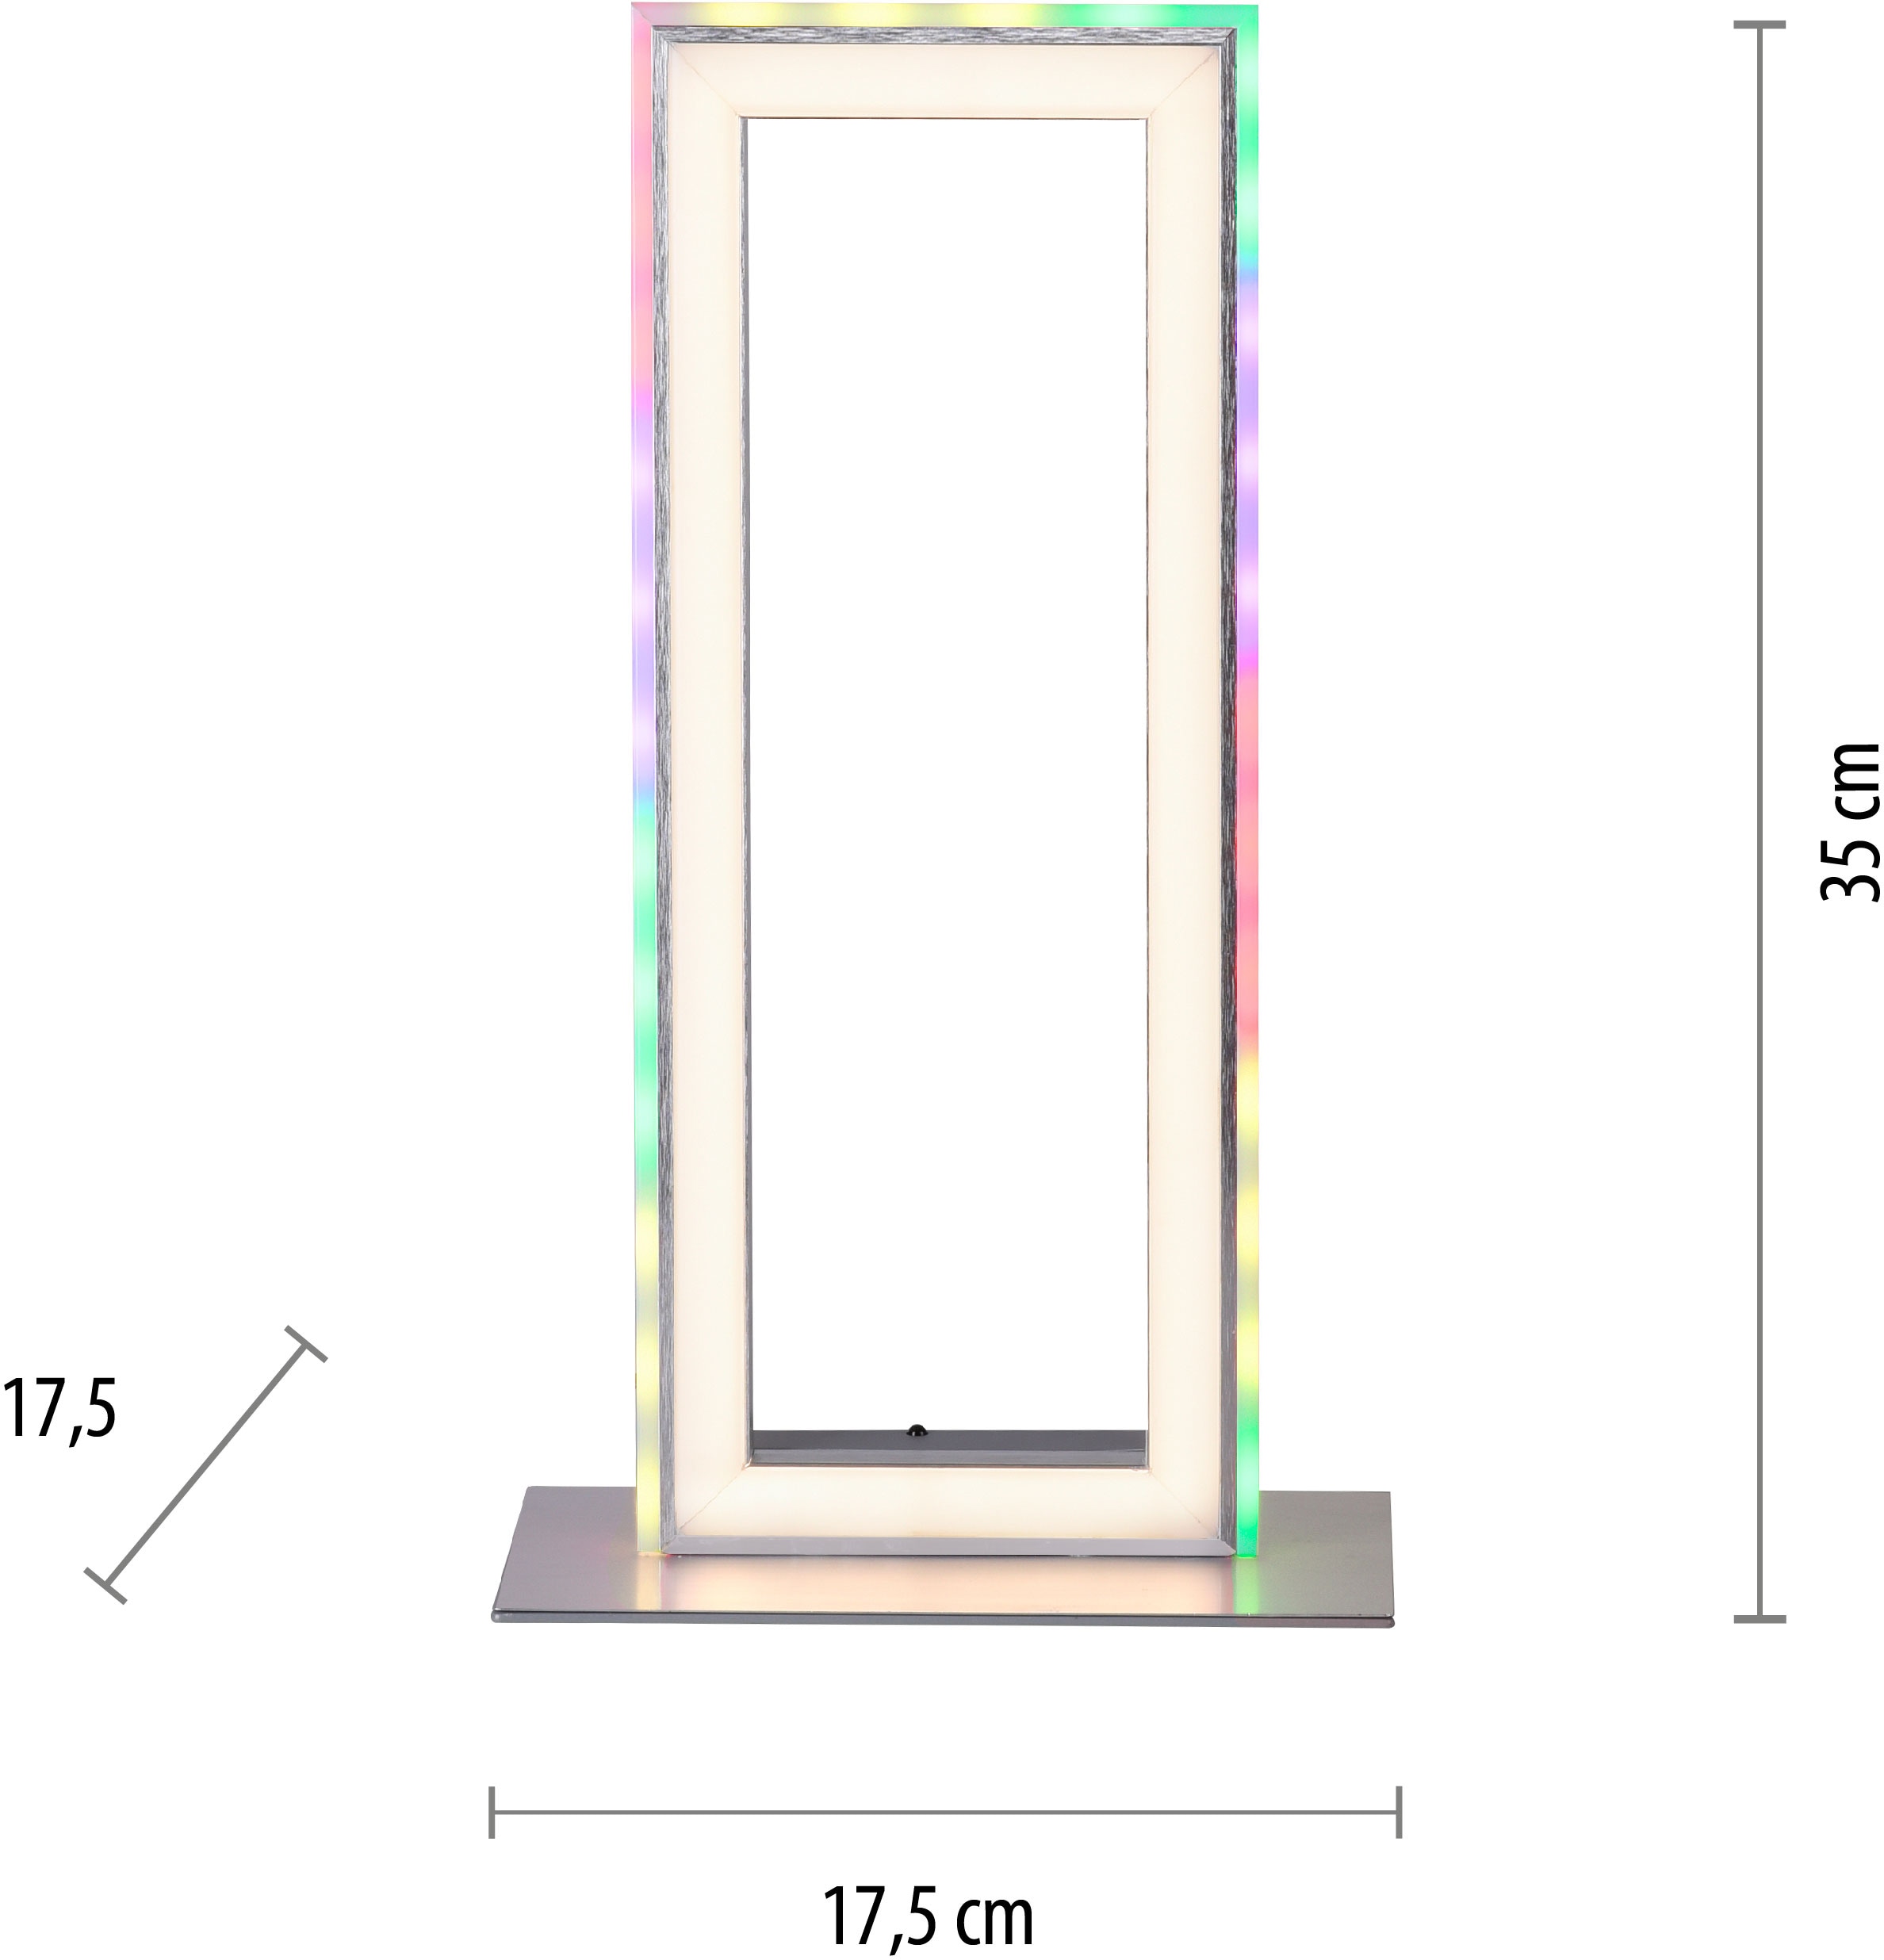 my home LED Tischleuchte »Luan«, 2 flammig-flammig, 2700-5000K, Rainbow-RGB,  Infrarot-Fernbed. Tischlampe | BAUR